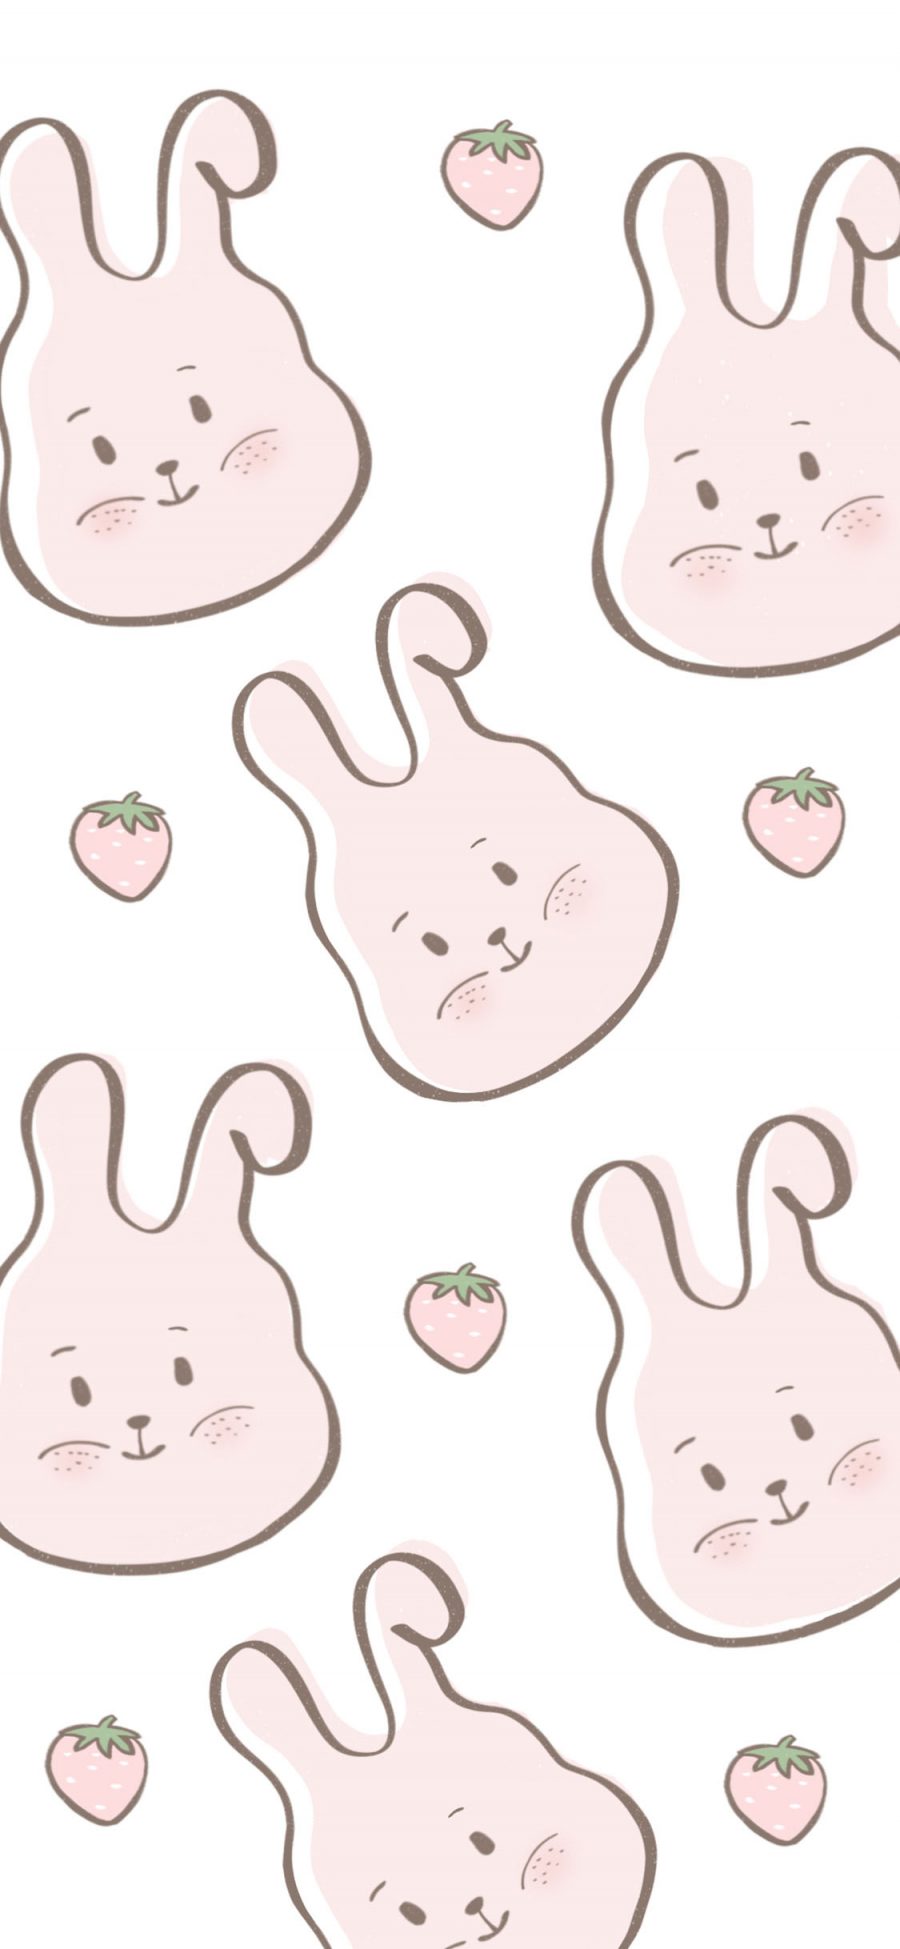 [2436×1125]兔子 可爱 平铺 草莓 苹果手机动漫壁纸图片